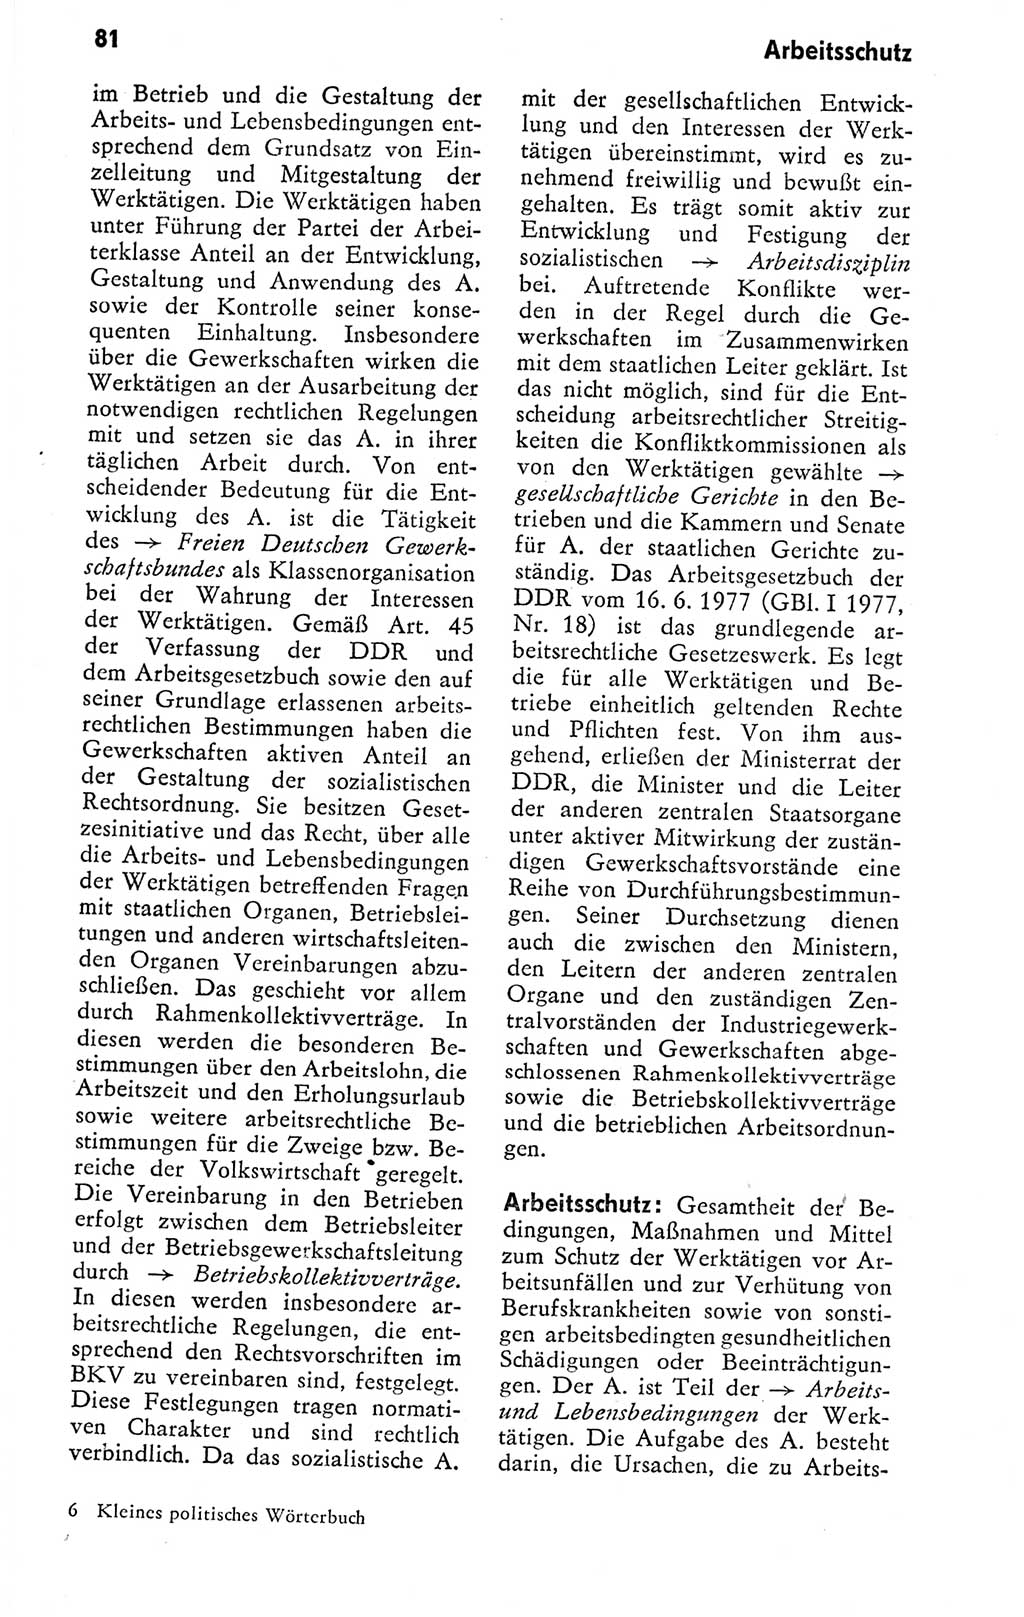 Kleines politisches Wörterbuch [Deutsche Demokratische Republik (DDR)] 1978, Seite 81 (Kl. pol. Wb. DDR 1978, S. 81)